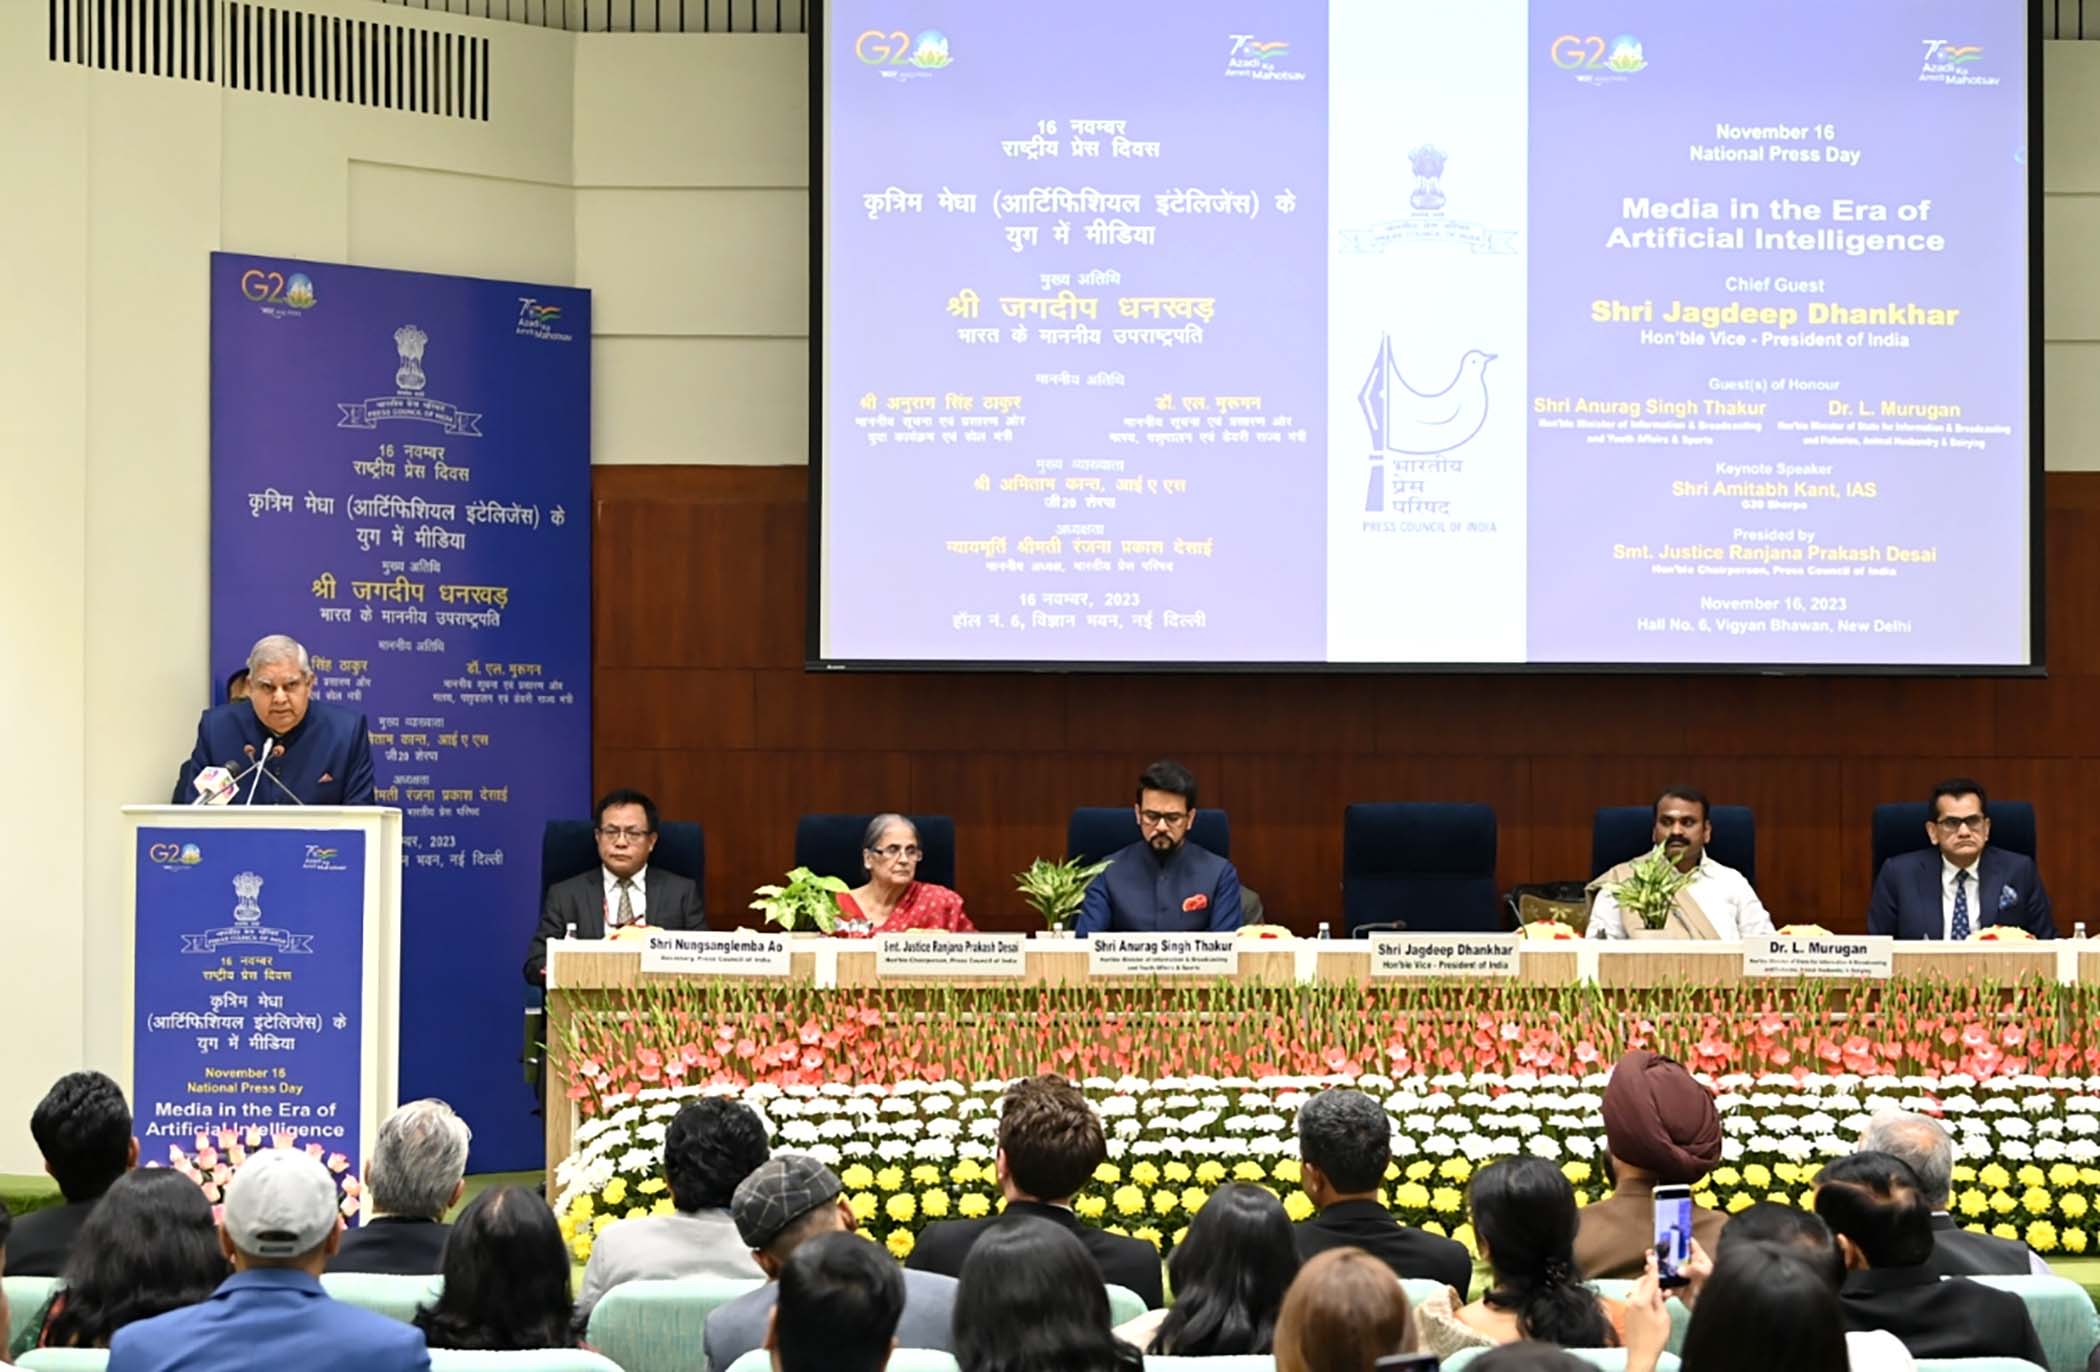 16 नवंबर 2023 को नई दिल्ली के विज्ञान भवन में राष्ट्रीय प्रैस दिवस के उद्धाटन समारोह के दौरान सभा को संबोधित करते हुए उपराष्ट्रपति श्री जगदीप धनखड़। 